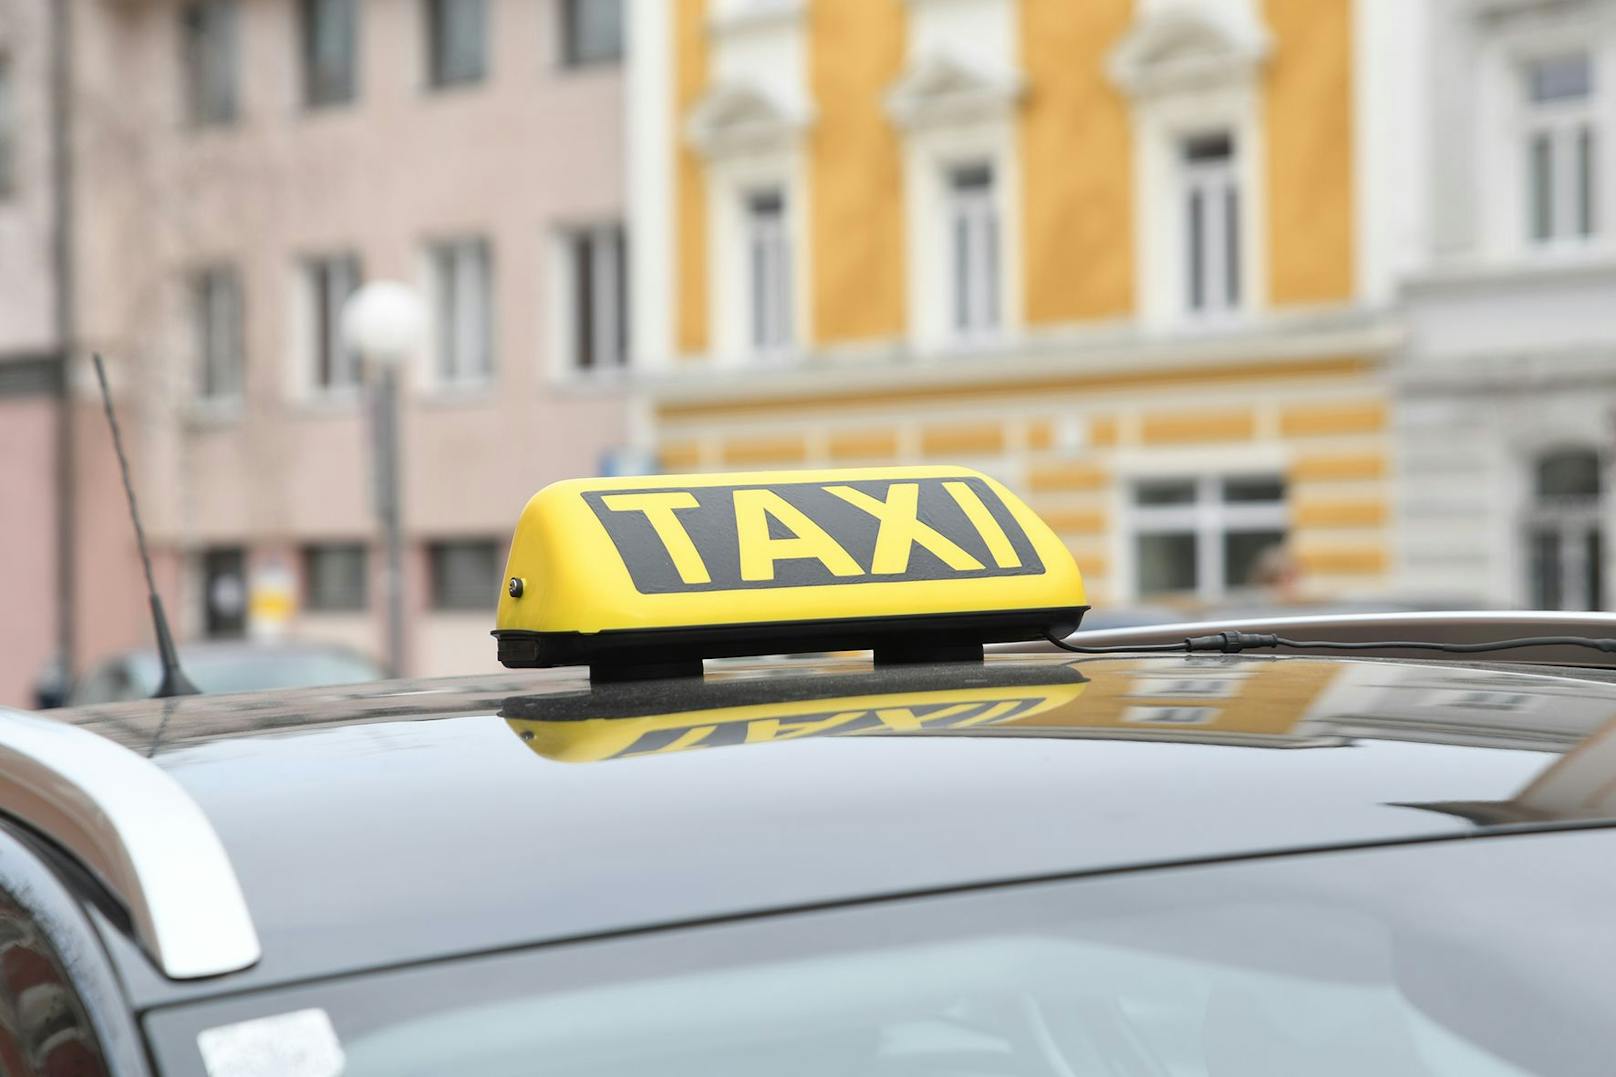 Das Unternehmen "Taxi 40100" bietet gratis Ausbildungsplätze für Geflüchtete aus der Ukraine an. Zusätzlich geht ein Taxigutschein im Wert von 1.000 Euro an die Volkshilfe.